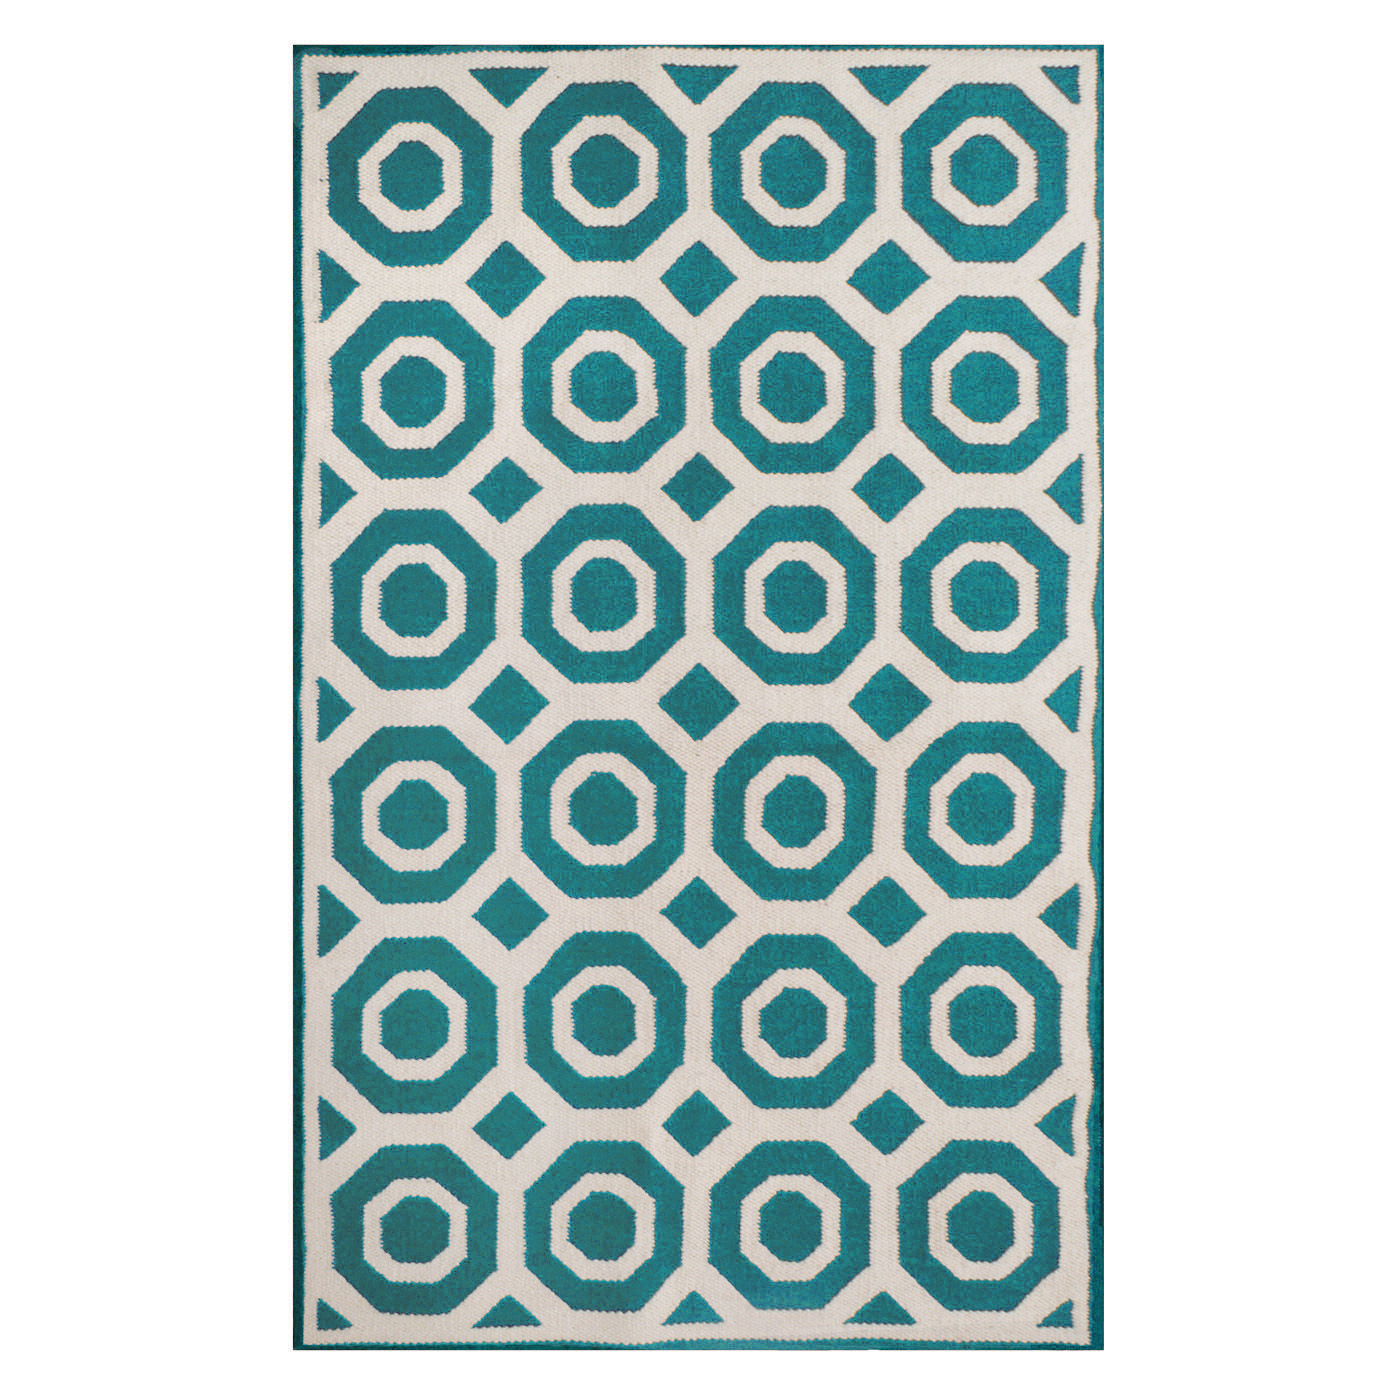 jonathan adler's peruvian lamb wool rug design of Pat Nixon Turquoise.